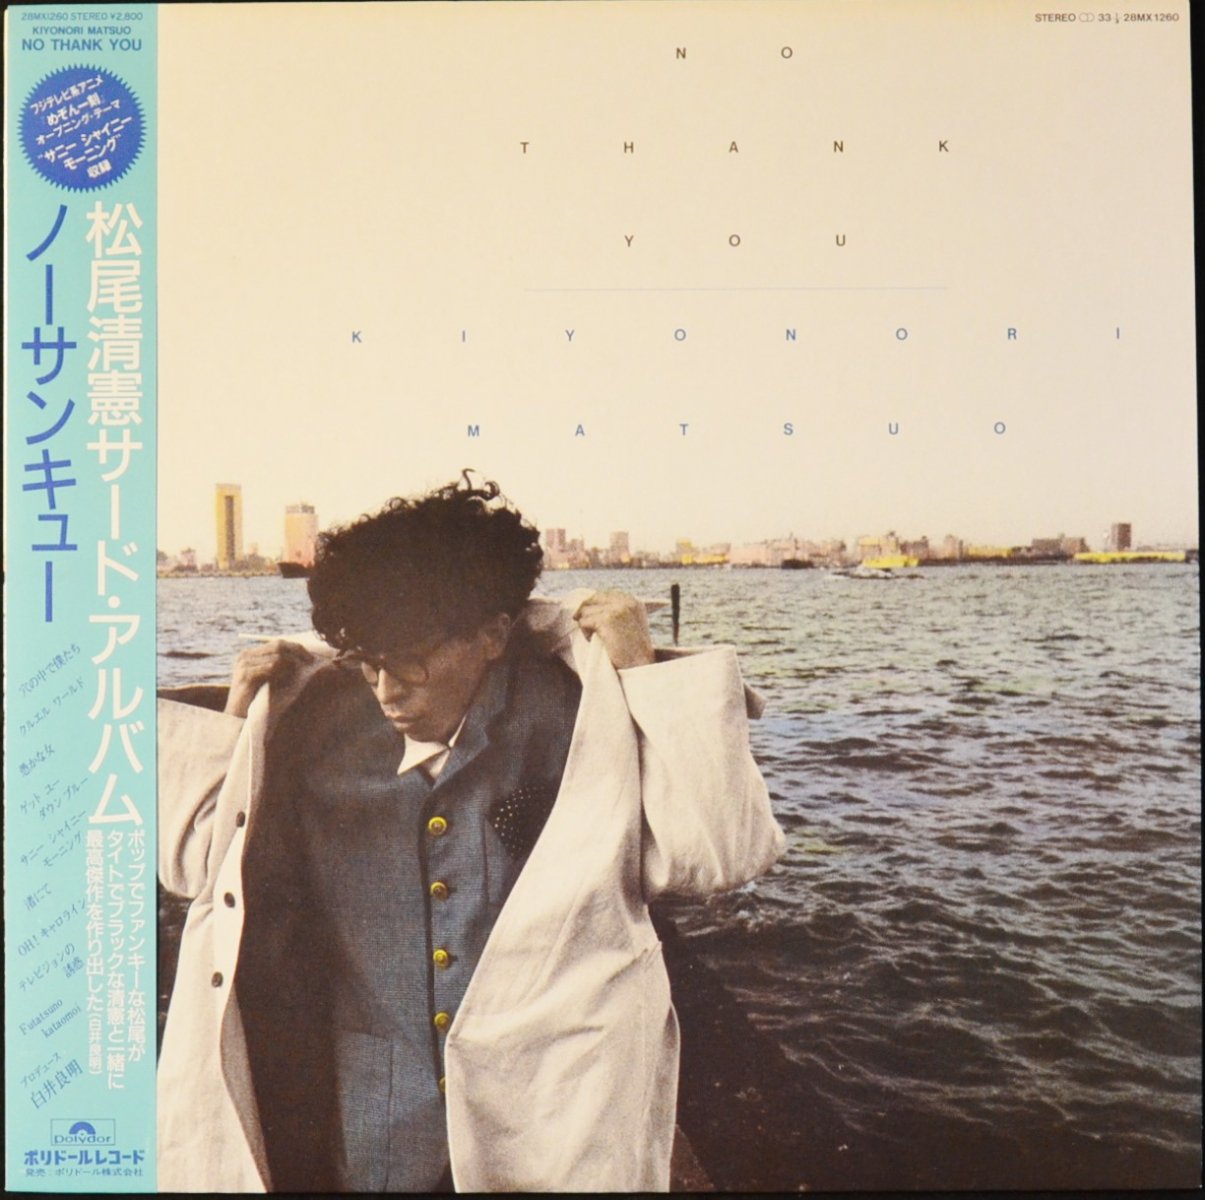 松尾清憲 KIYONORI MATSUO / ノーサンキュー NO THANK YOU (LP) - HIP TANK RECORDS